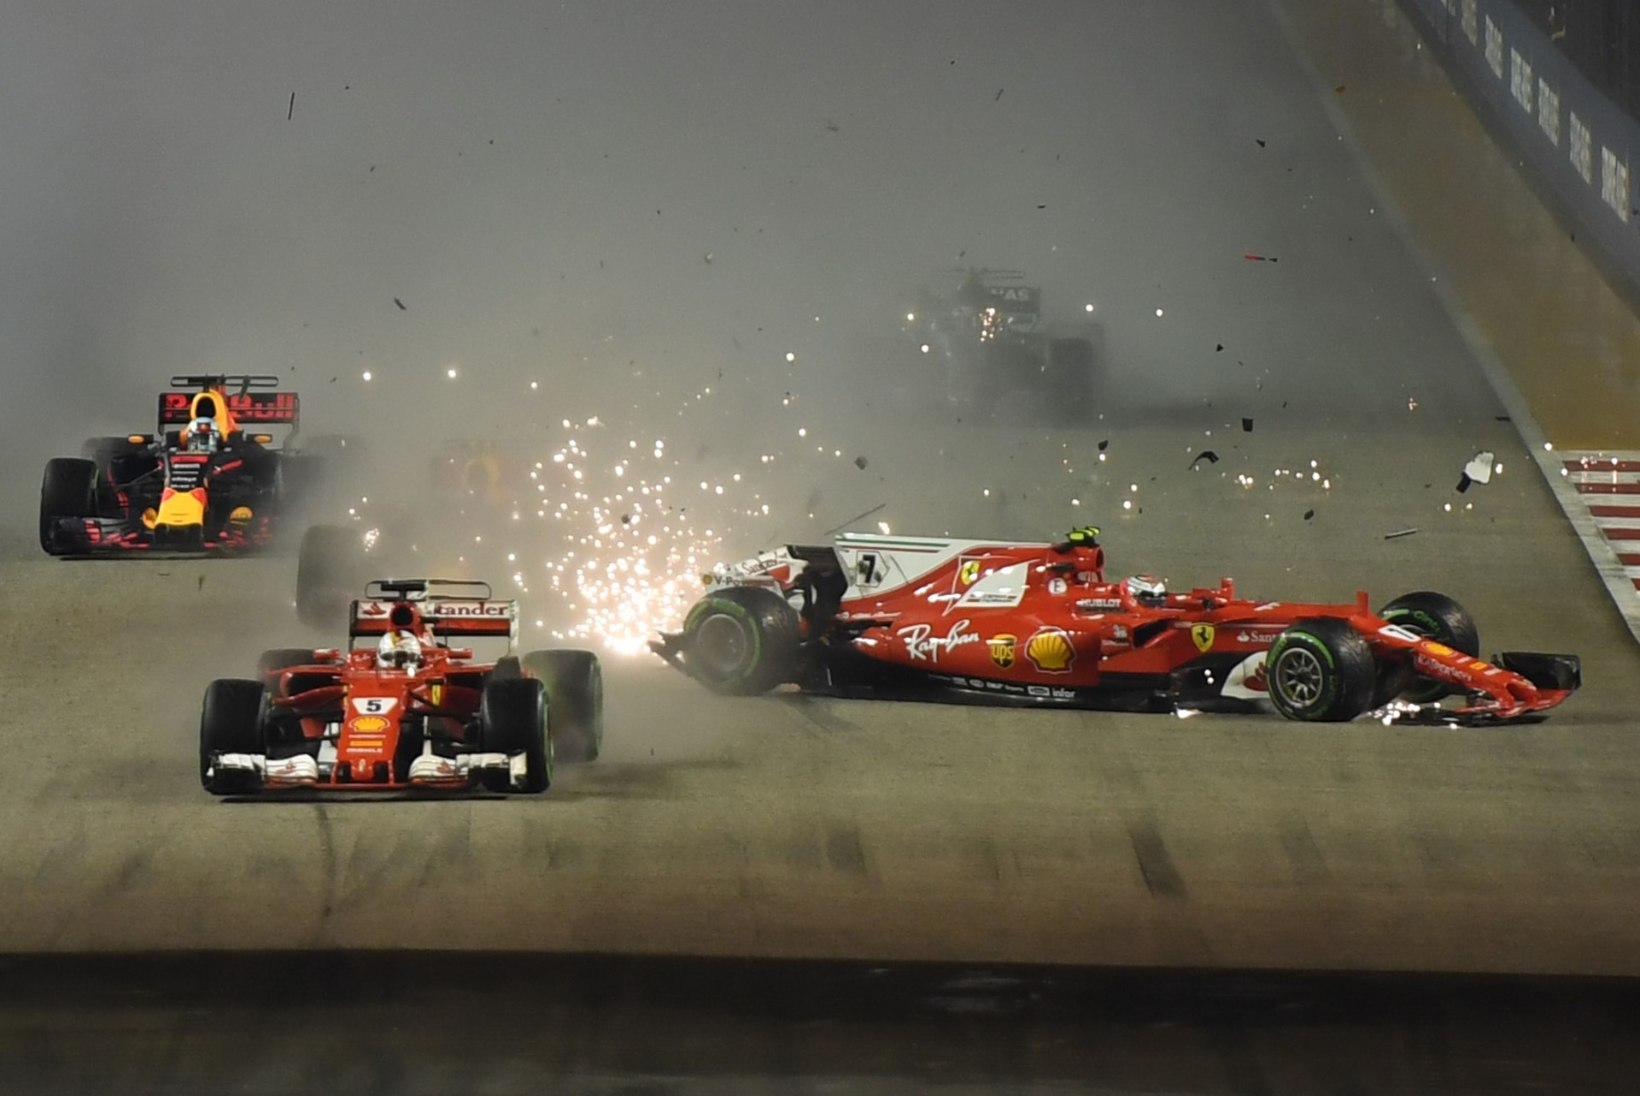 FOTOD JA VIDEO | Vetteli, Räikköneni ja Verstappeni uskumatu avarii Singapuri GP stardis